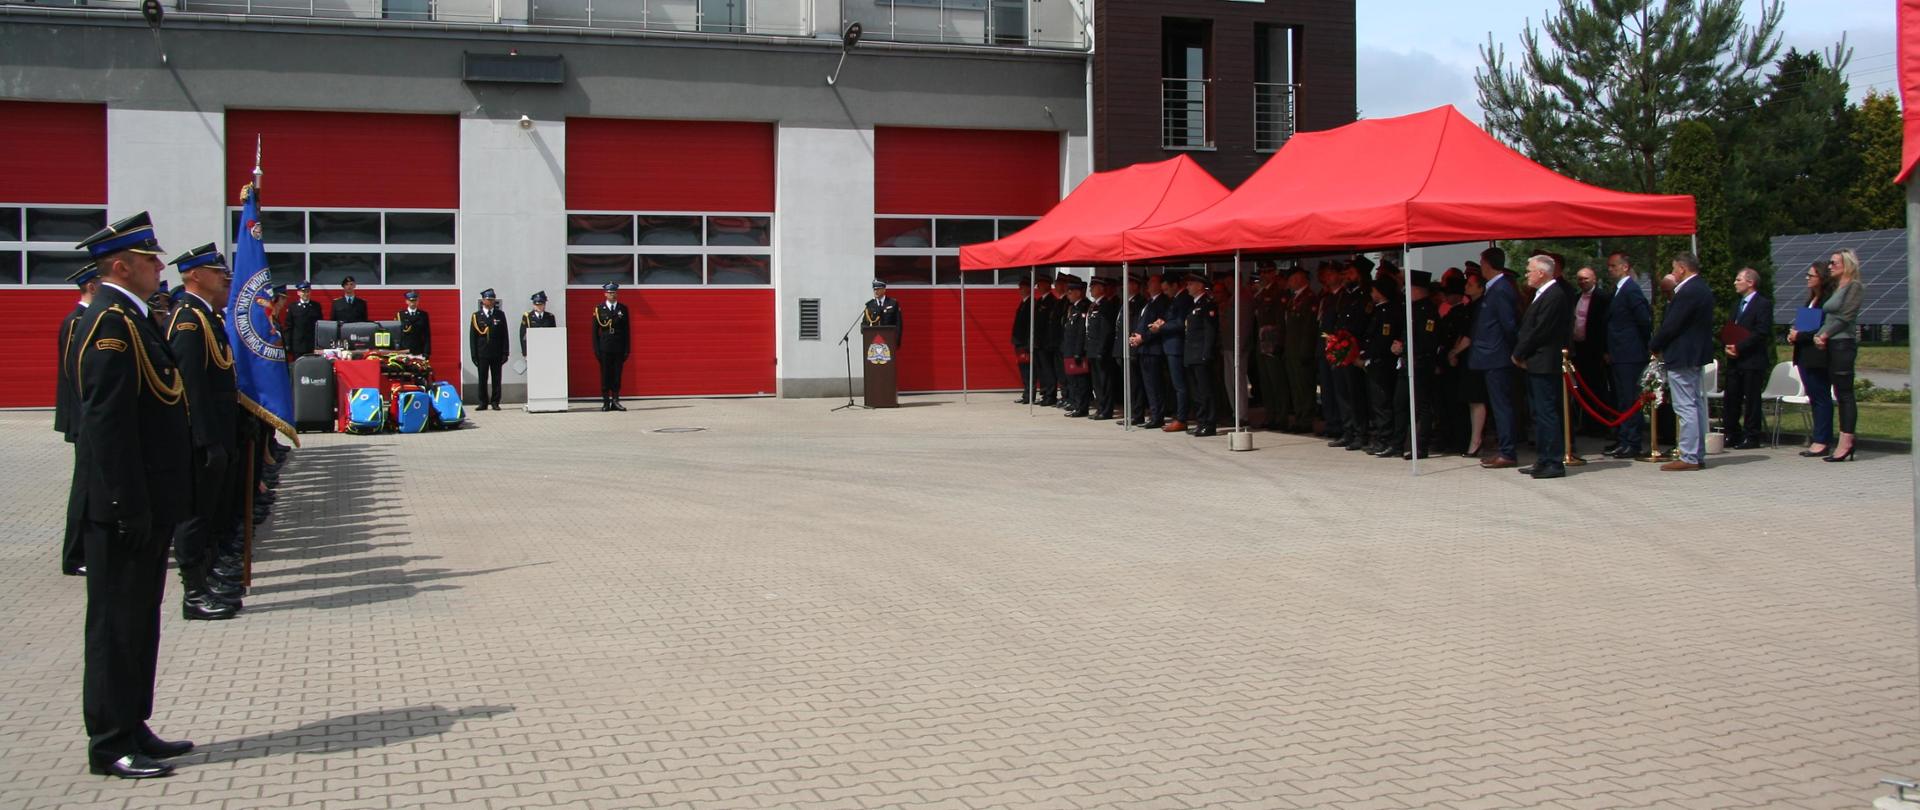 Na tle budynku po lewej stronie dowódca pododdziału oraz Sztandar Komendy Powiatowej Państwowej Straży Pożarnej w Lublińcu oraz pododdział strażaków w środkowej części pod baldachimem grupa zaproszonych gości.